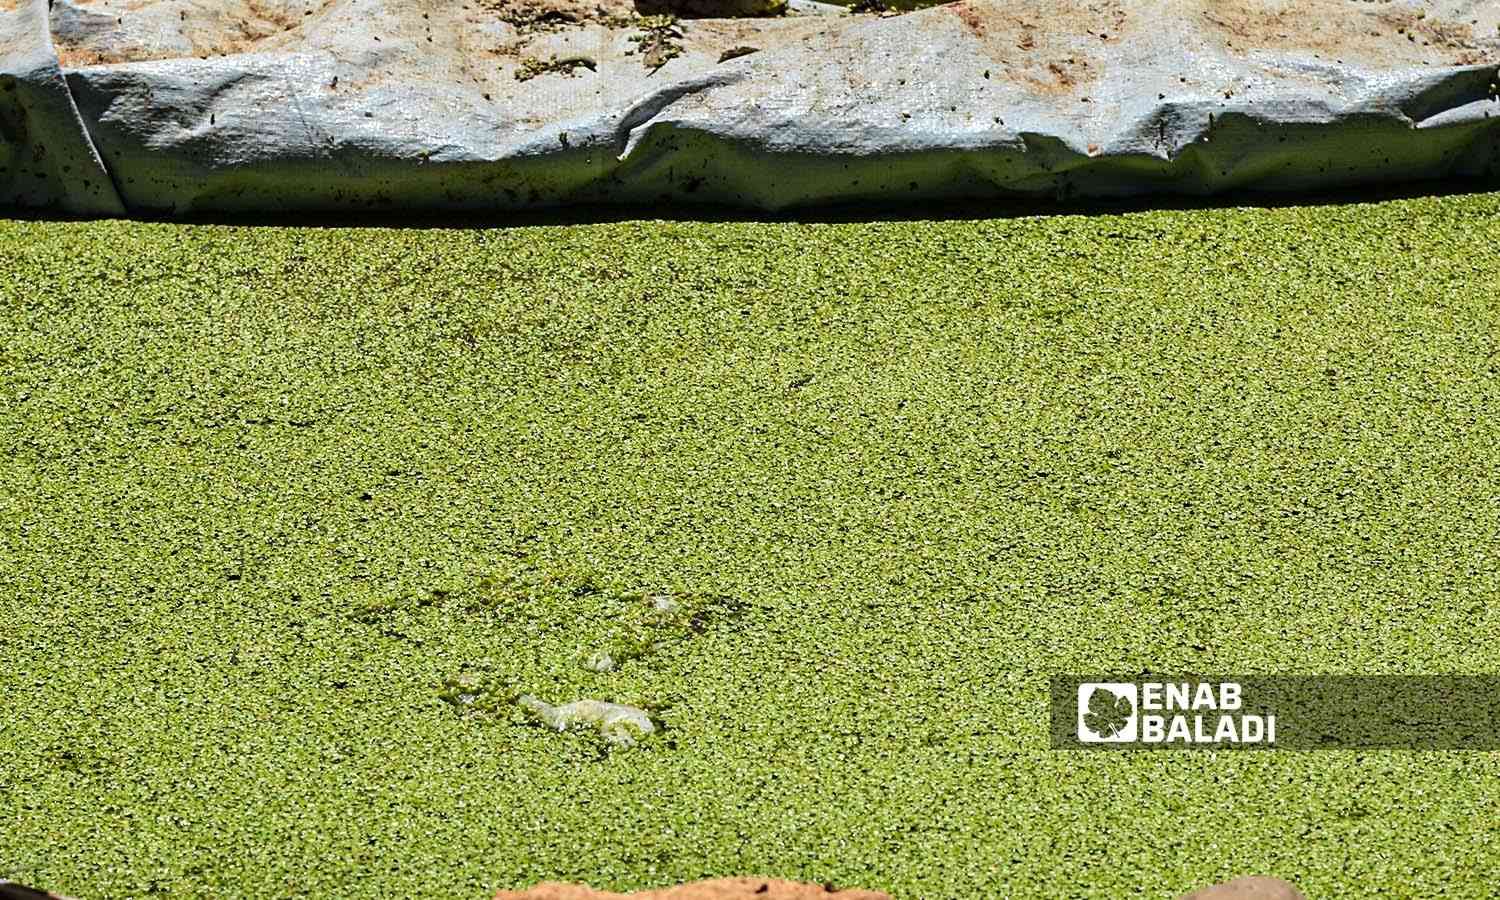 حوض مائي صغير زُرع فيه نبات الازولا وهو "نبات سرخسي" يعيش طافيًا على سطح المياه في منطقة عفرين بريف حلب الشمالي - 30 أيلول 2022 (عنب بلدي / أمير خربطلي)